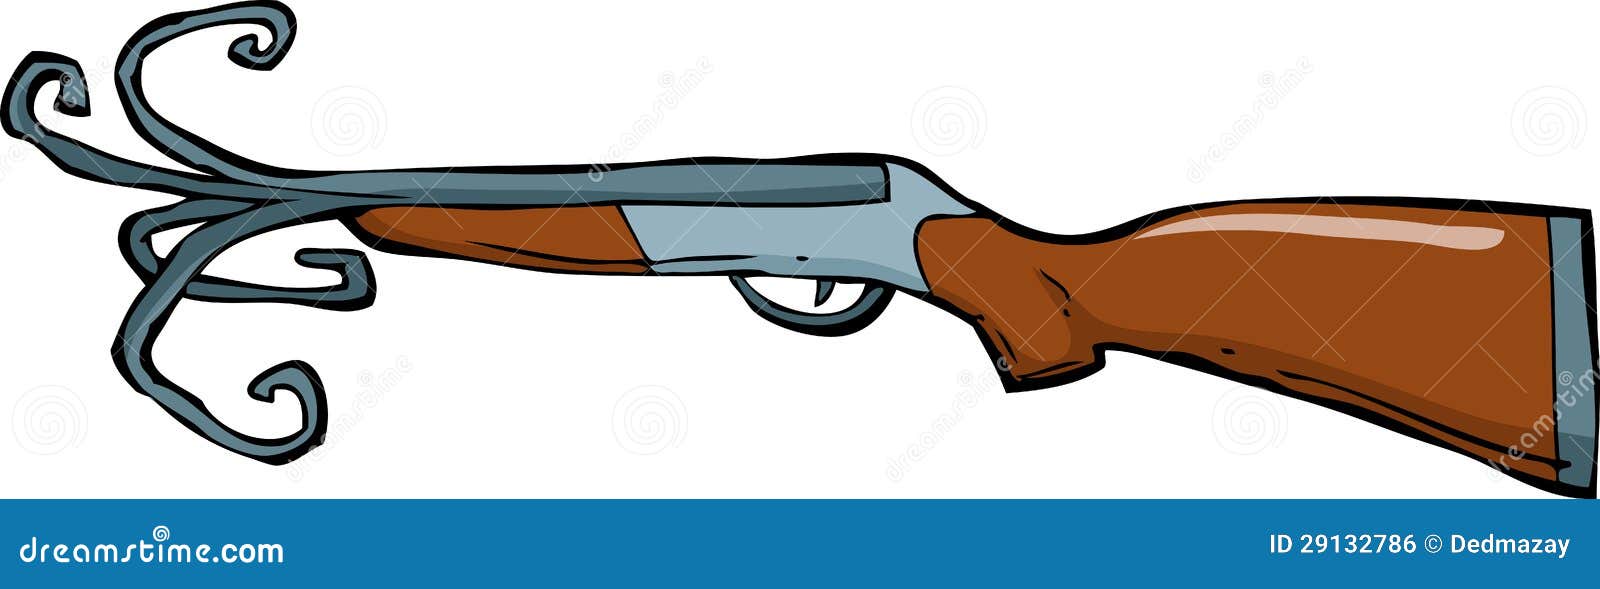 Shotgun stock vector. Illustration of cartoon, barrel - 29132786